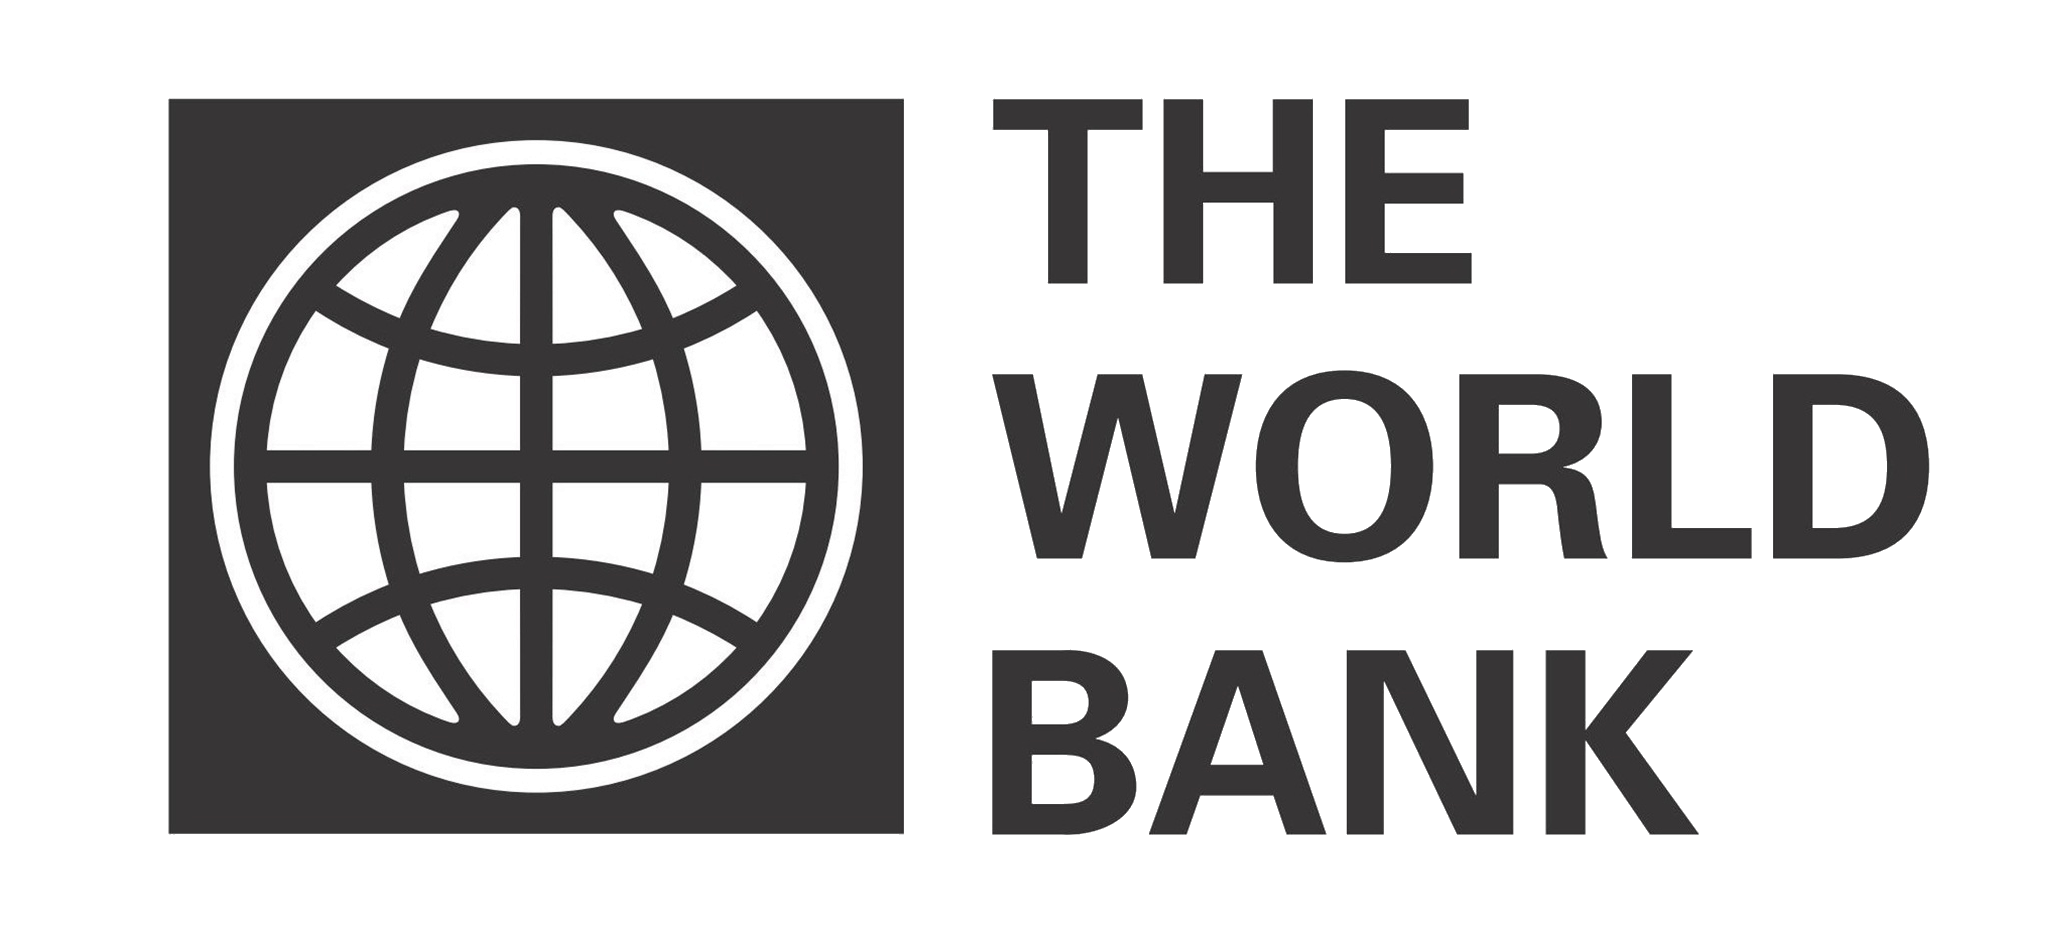 Оценка всемирного банка. Группа Всемирного банка эмблема. Всемирного банка (the World Bank). Всемирный банк США. Всемирный банк картинки.